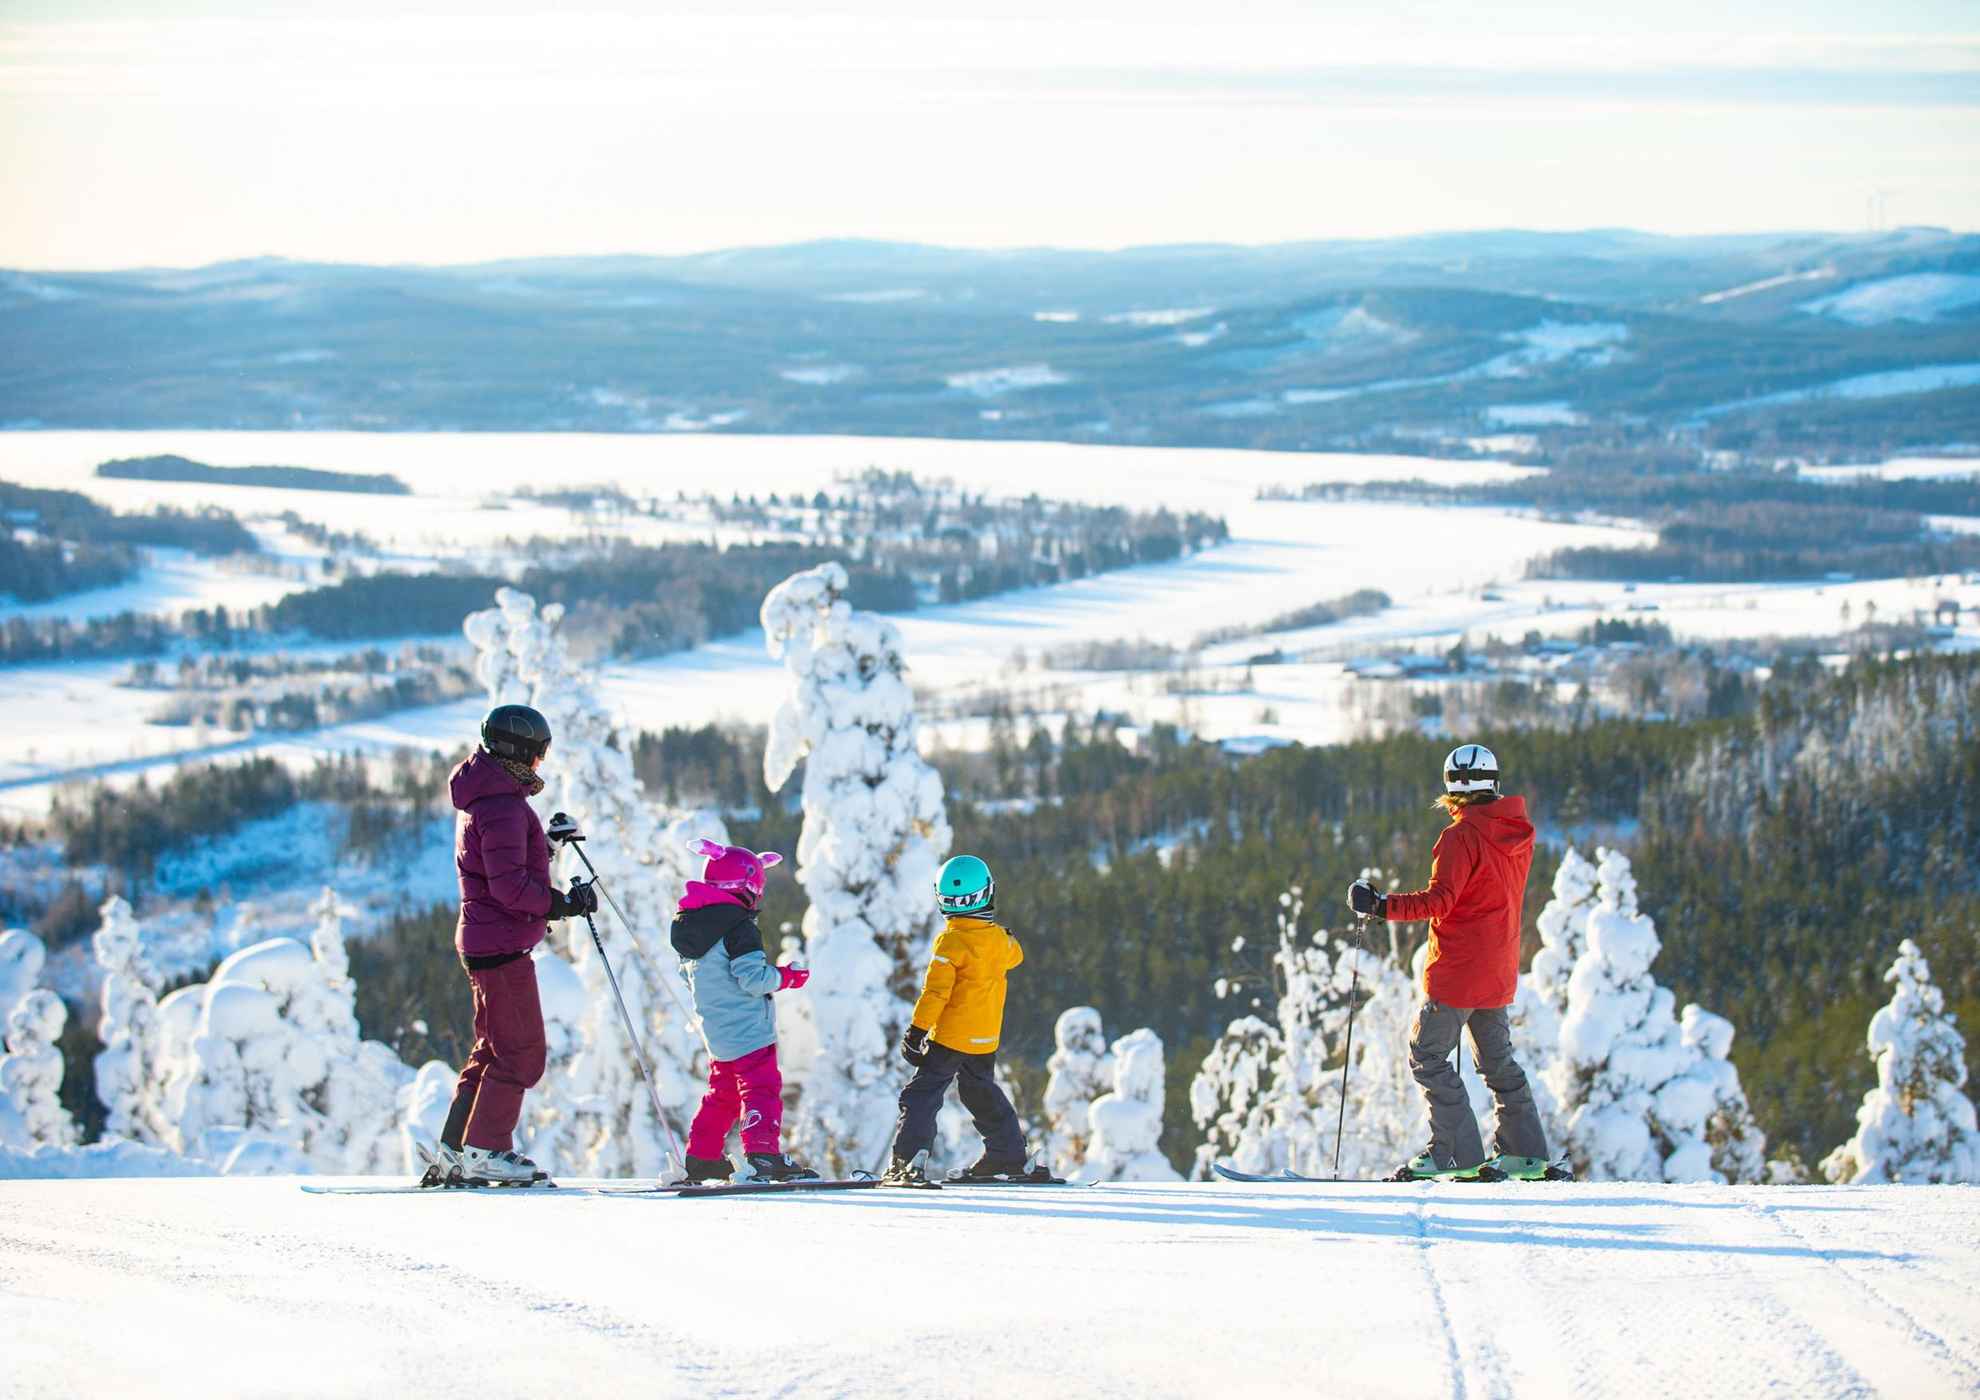 Zwei Kinder und zwei Erwachsene in Skikleidung stehen auf ihren Skiern am oberen Ende einer Skipiste. Im Hintergrund sind schneebedeckte Bäume und Berge des Skigebiets Järvsöbacken in Schweden zu sehen.